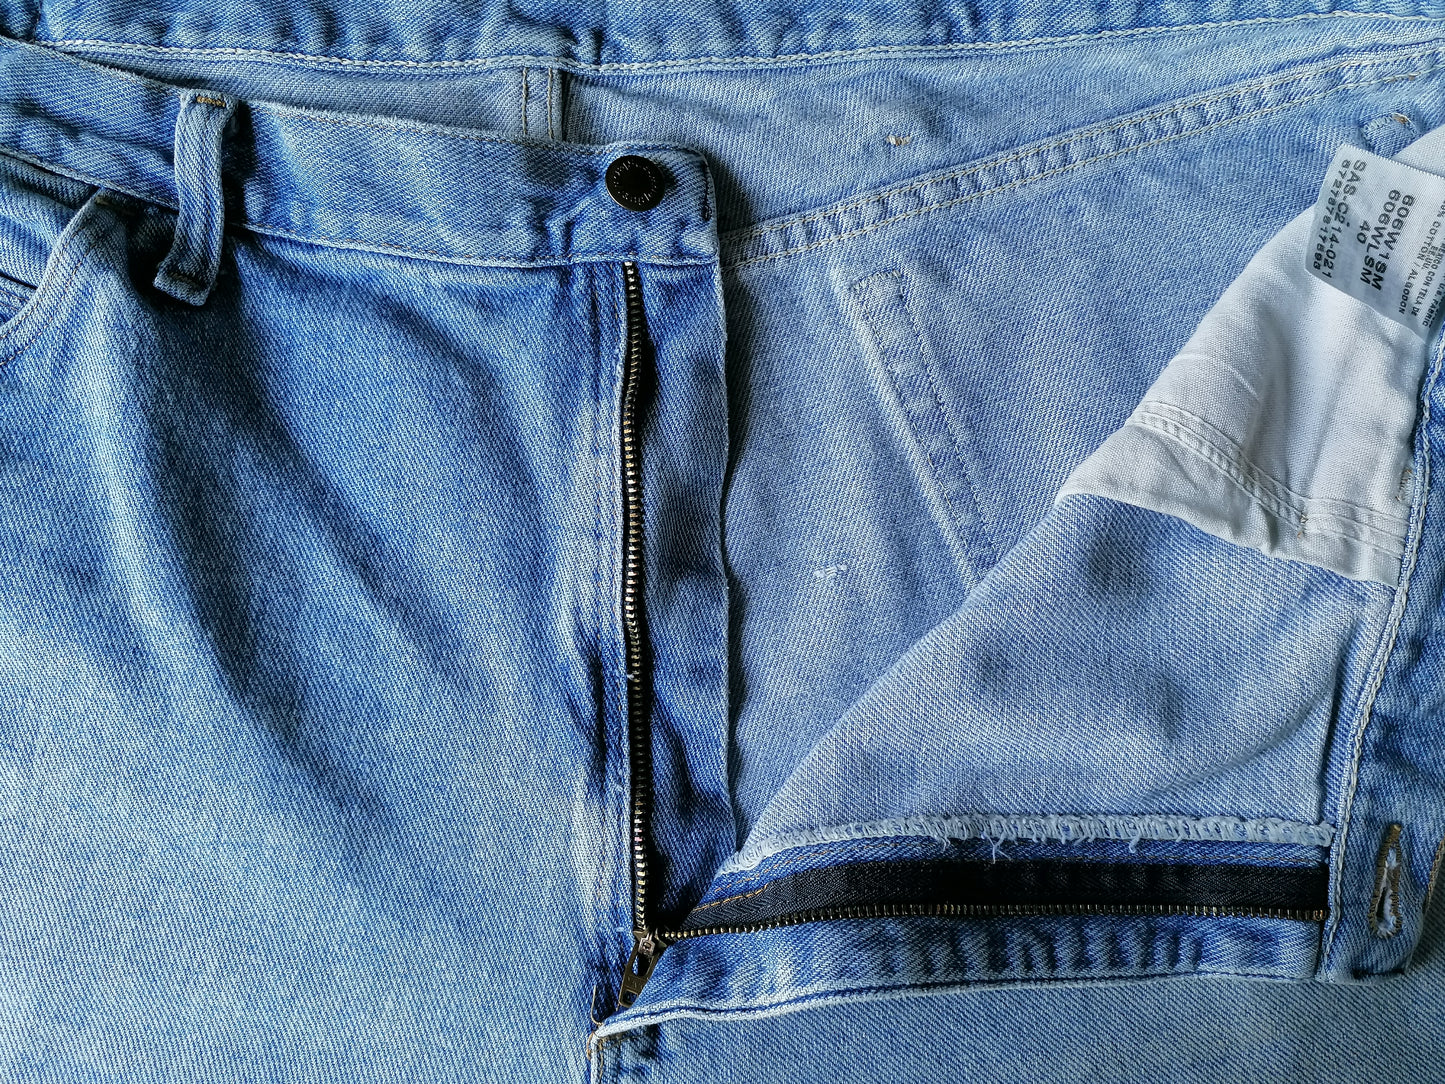 Shorts de jeans de Wrangler. Azul claro coloreado. Tamaño W40.